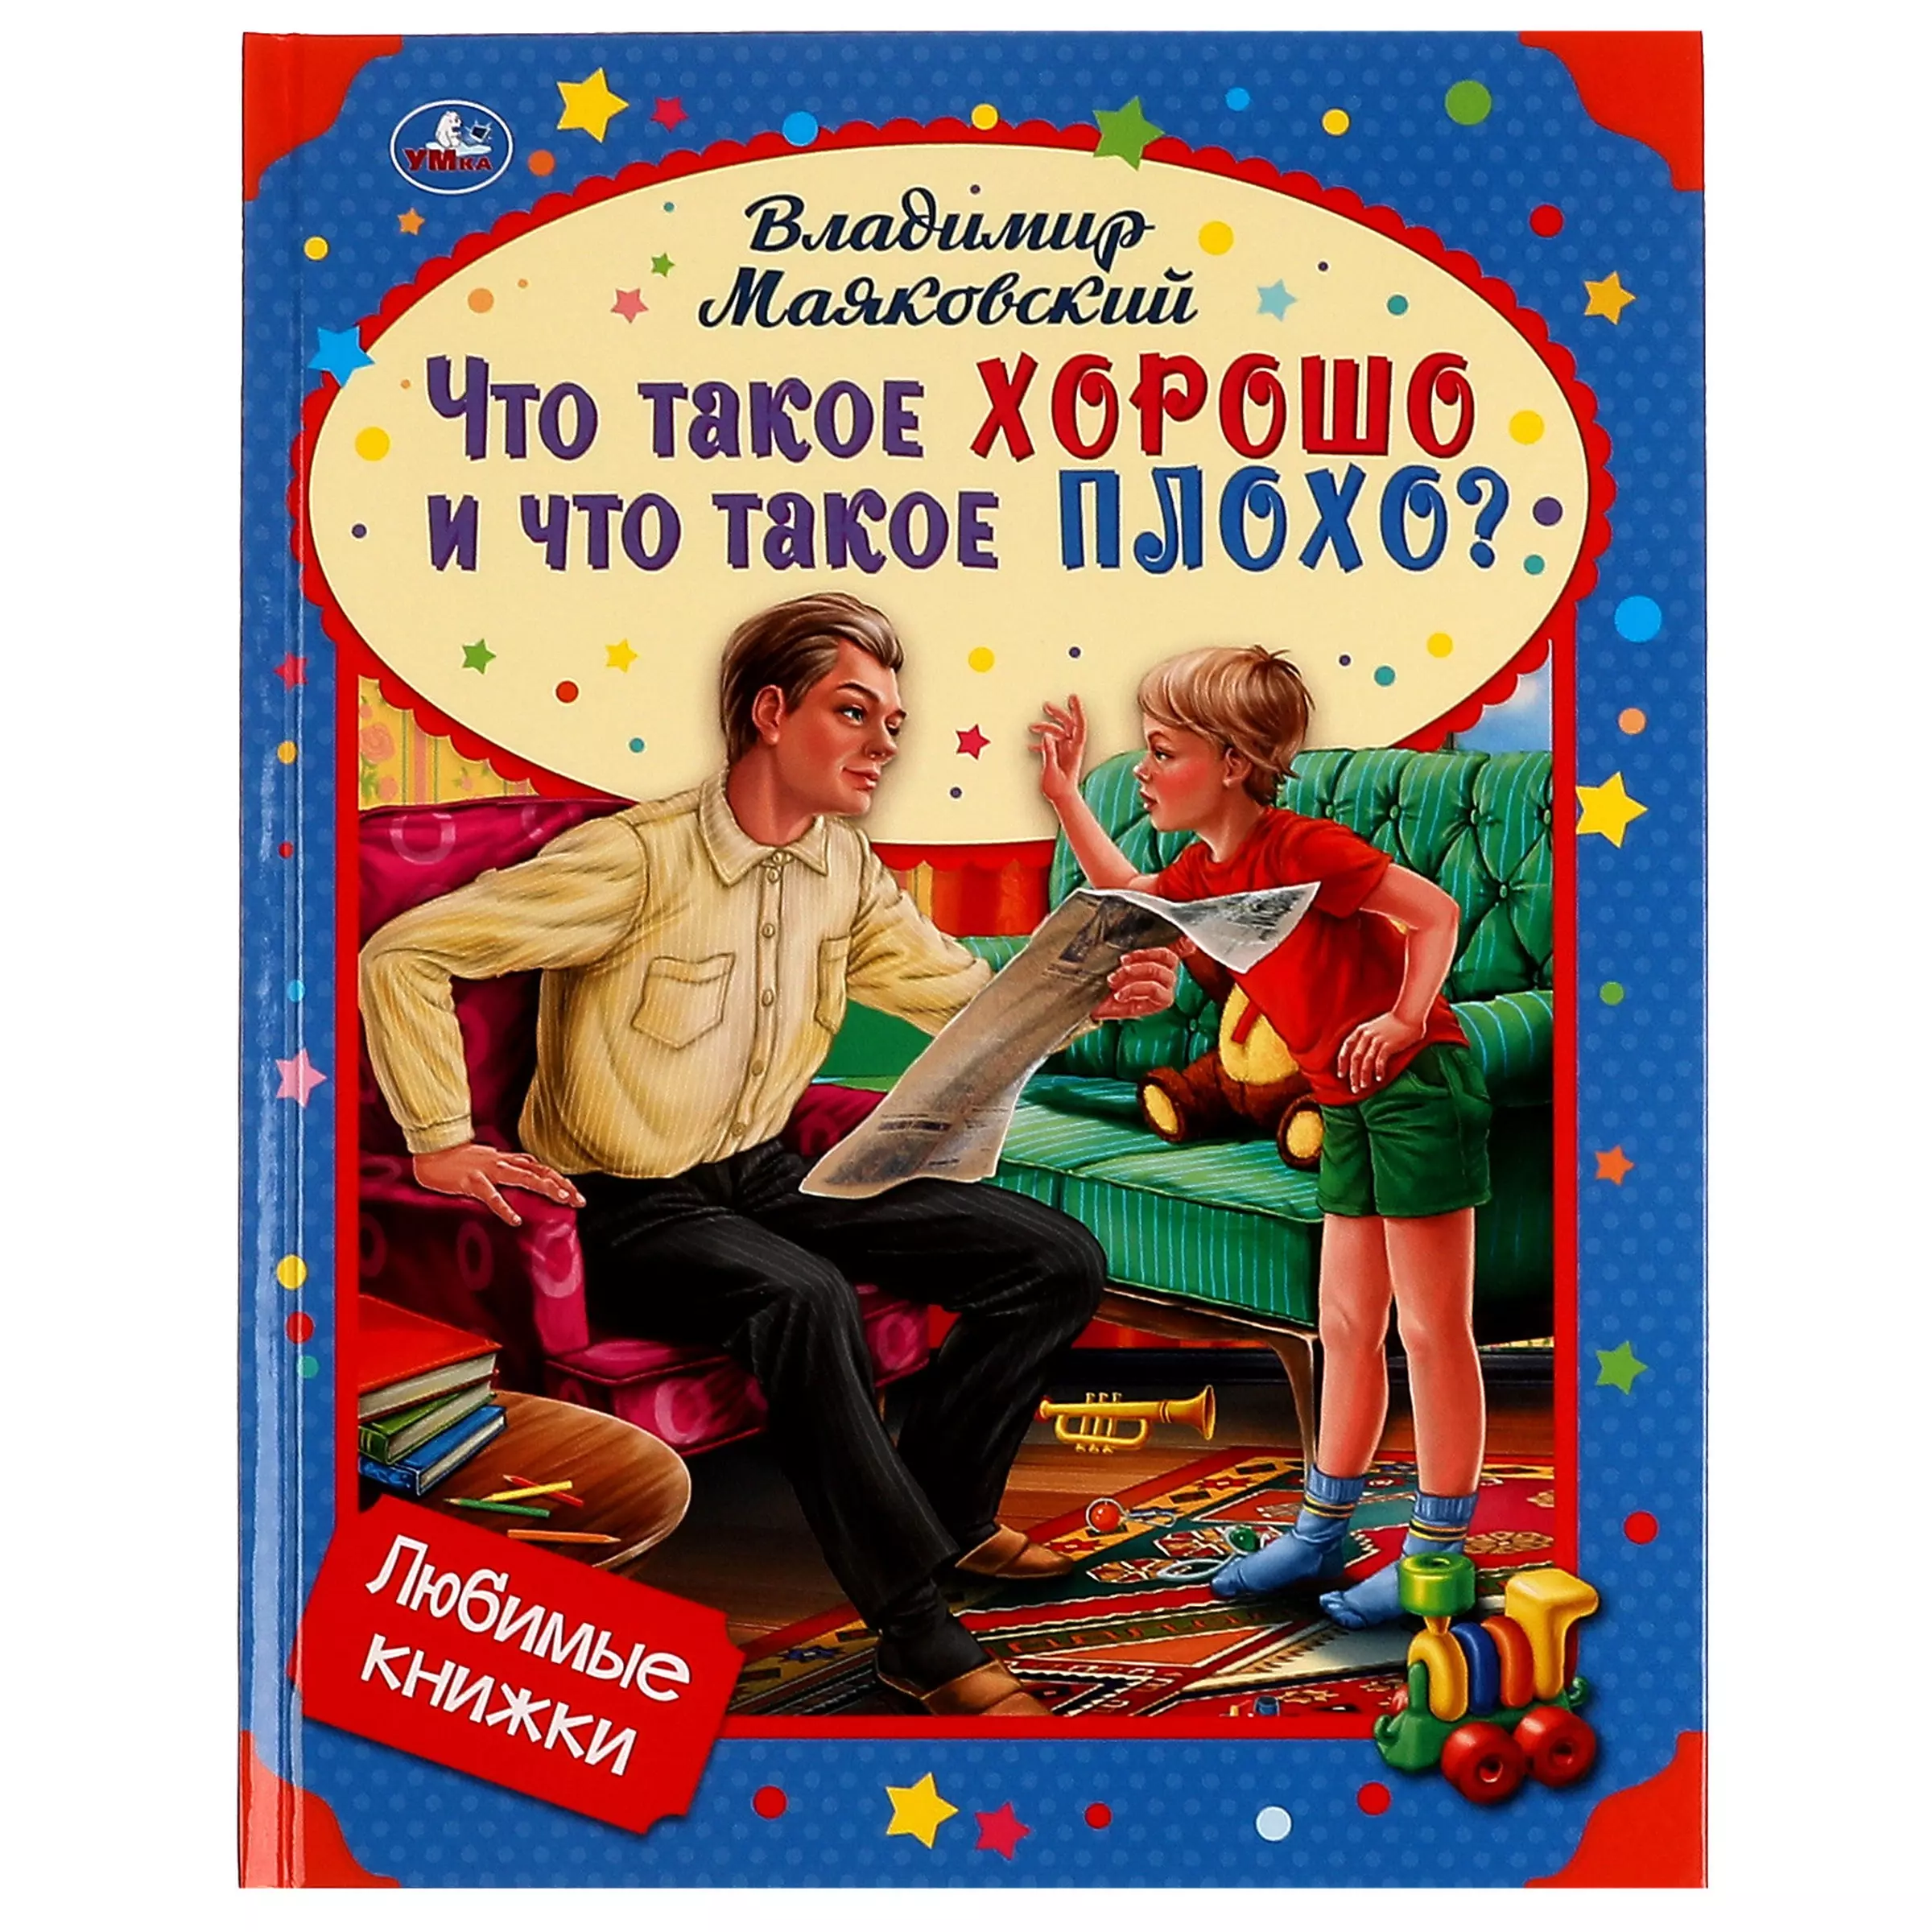 грецкая анастасия книжки на пене что такое детский сад Любимые книжки. Что такое хорошо и что такое плохо?